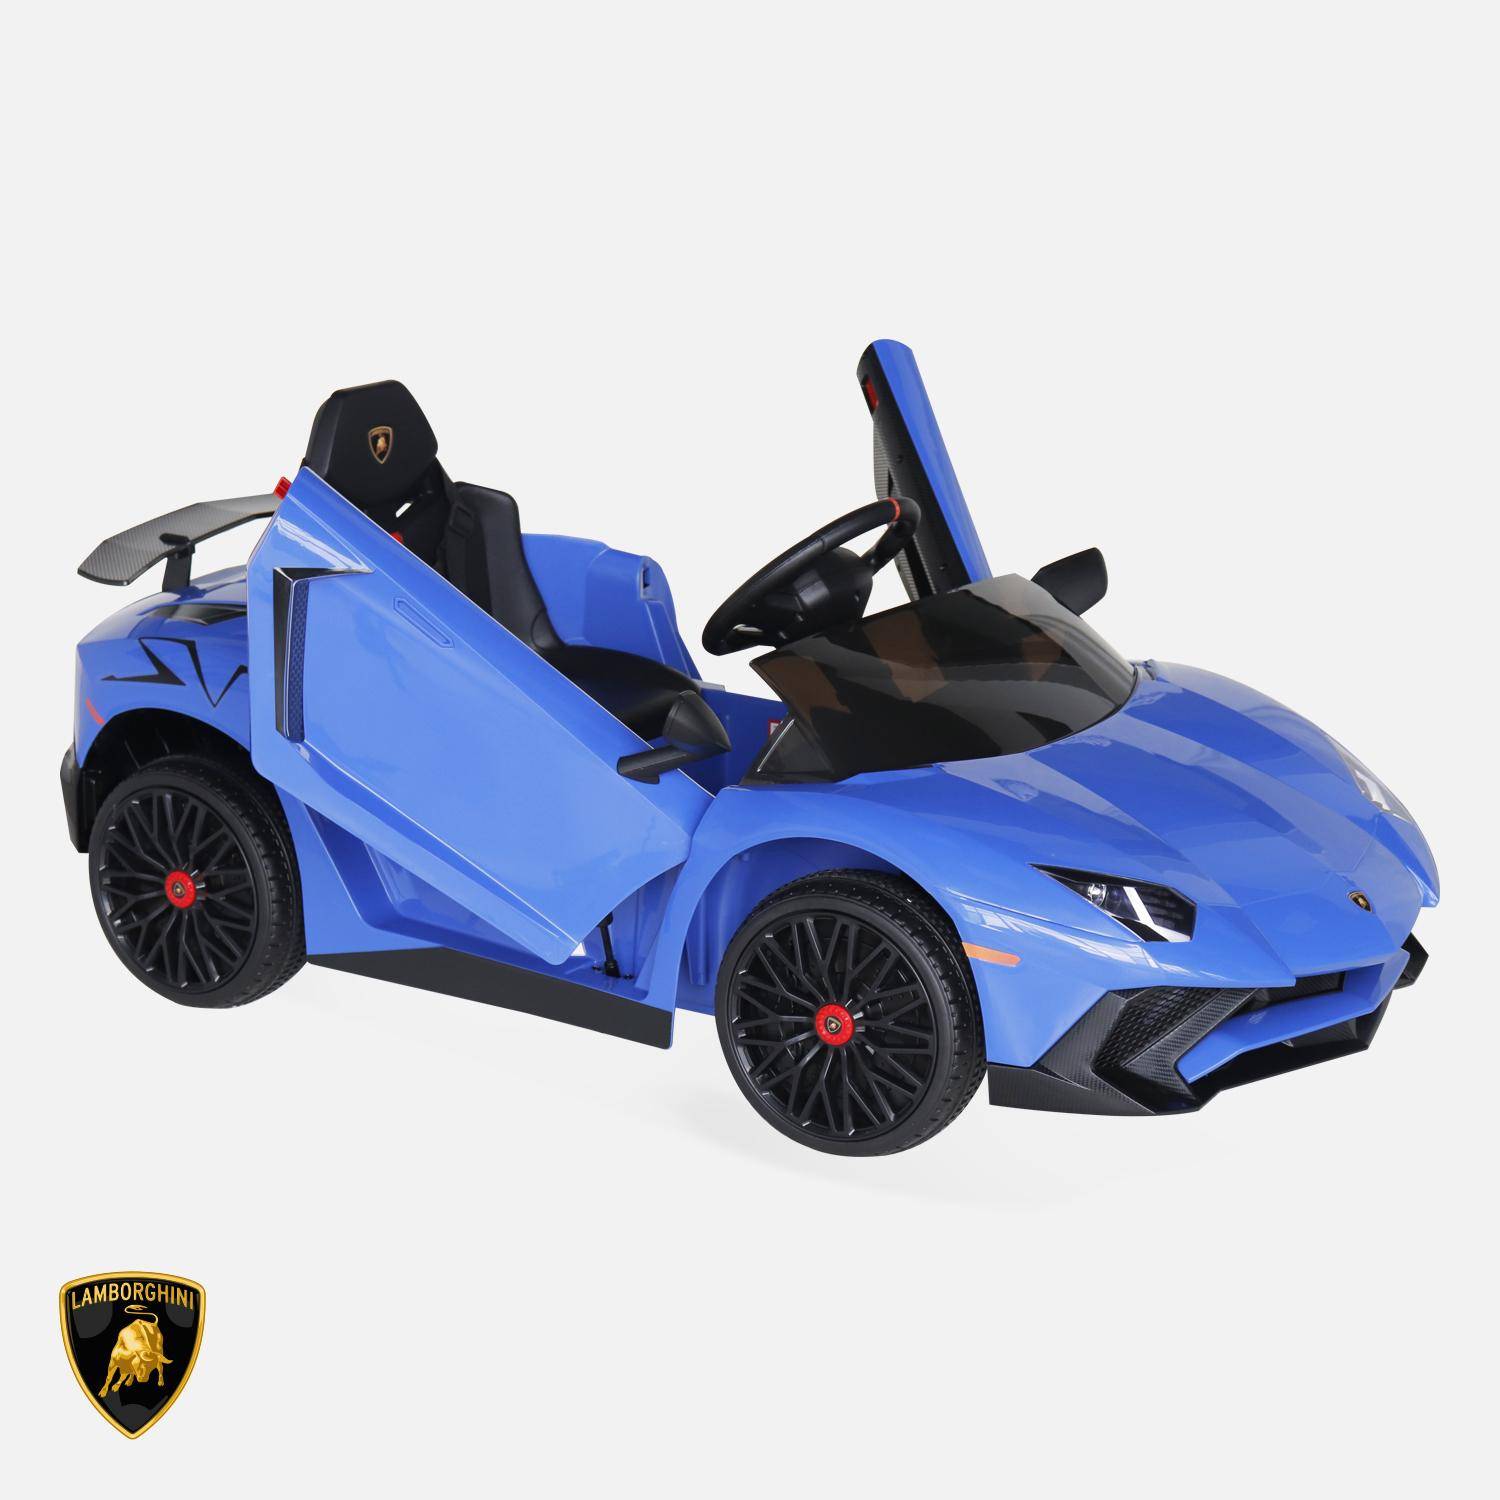 12V elektrische Lamborghini kinderauto, blauw, 1 zitplaats, met radio, afstandsbediening, MP3, USB-poort en functionele koplampen,sweeek,Photo2